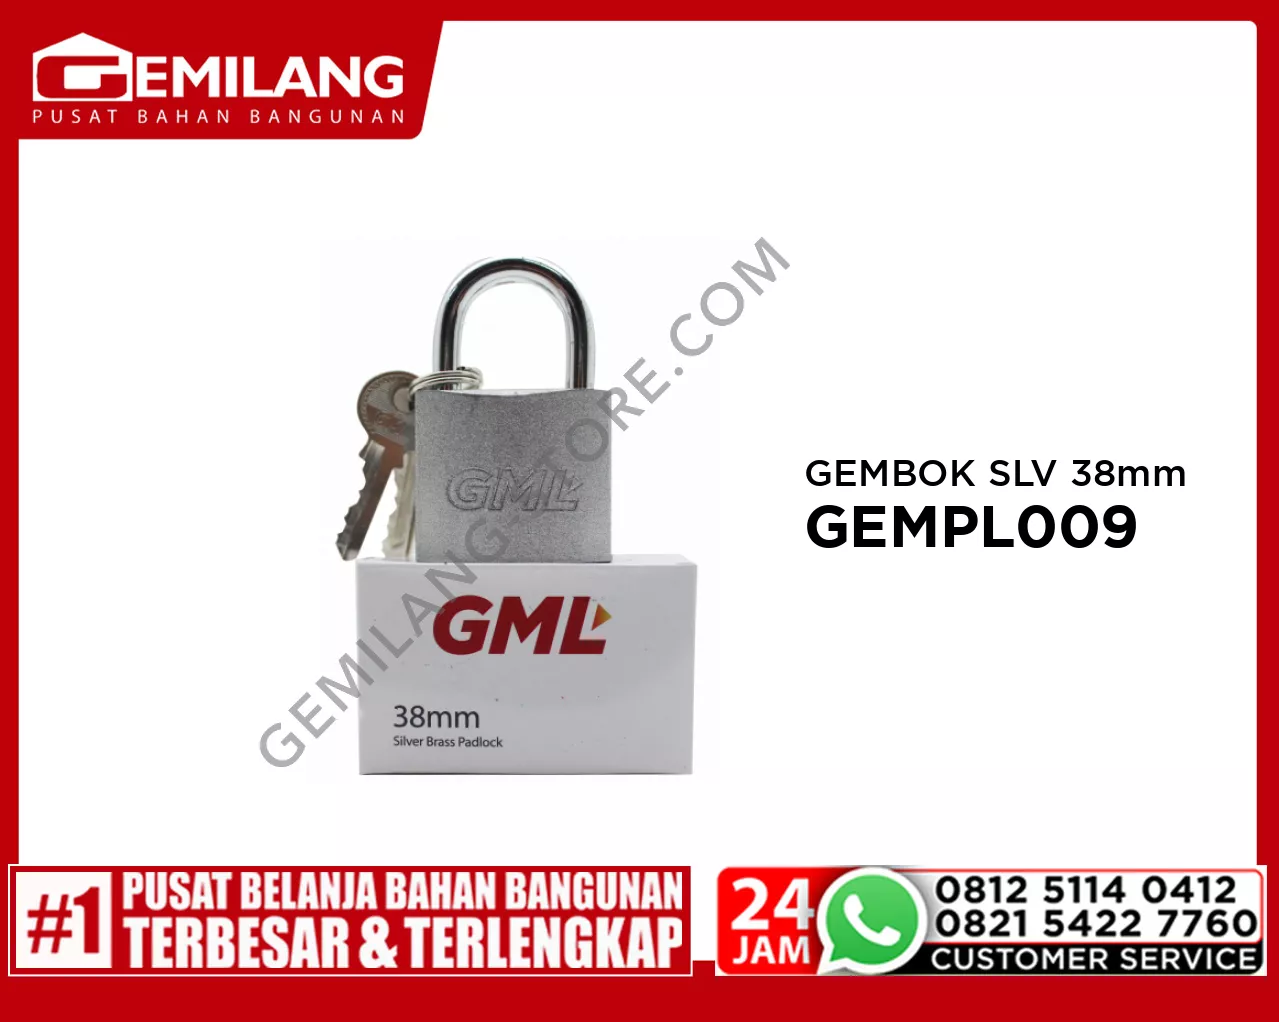 GML GEMBOK SILVER 38mm GEMPL009